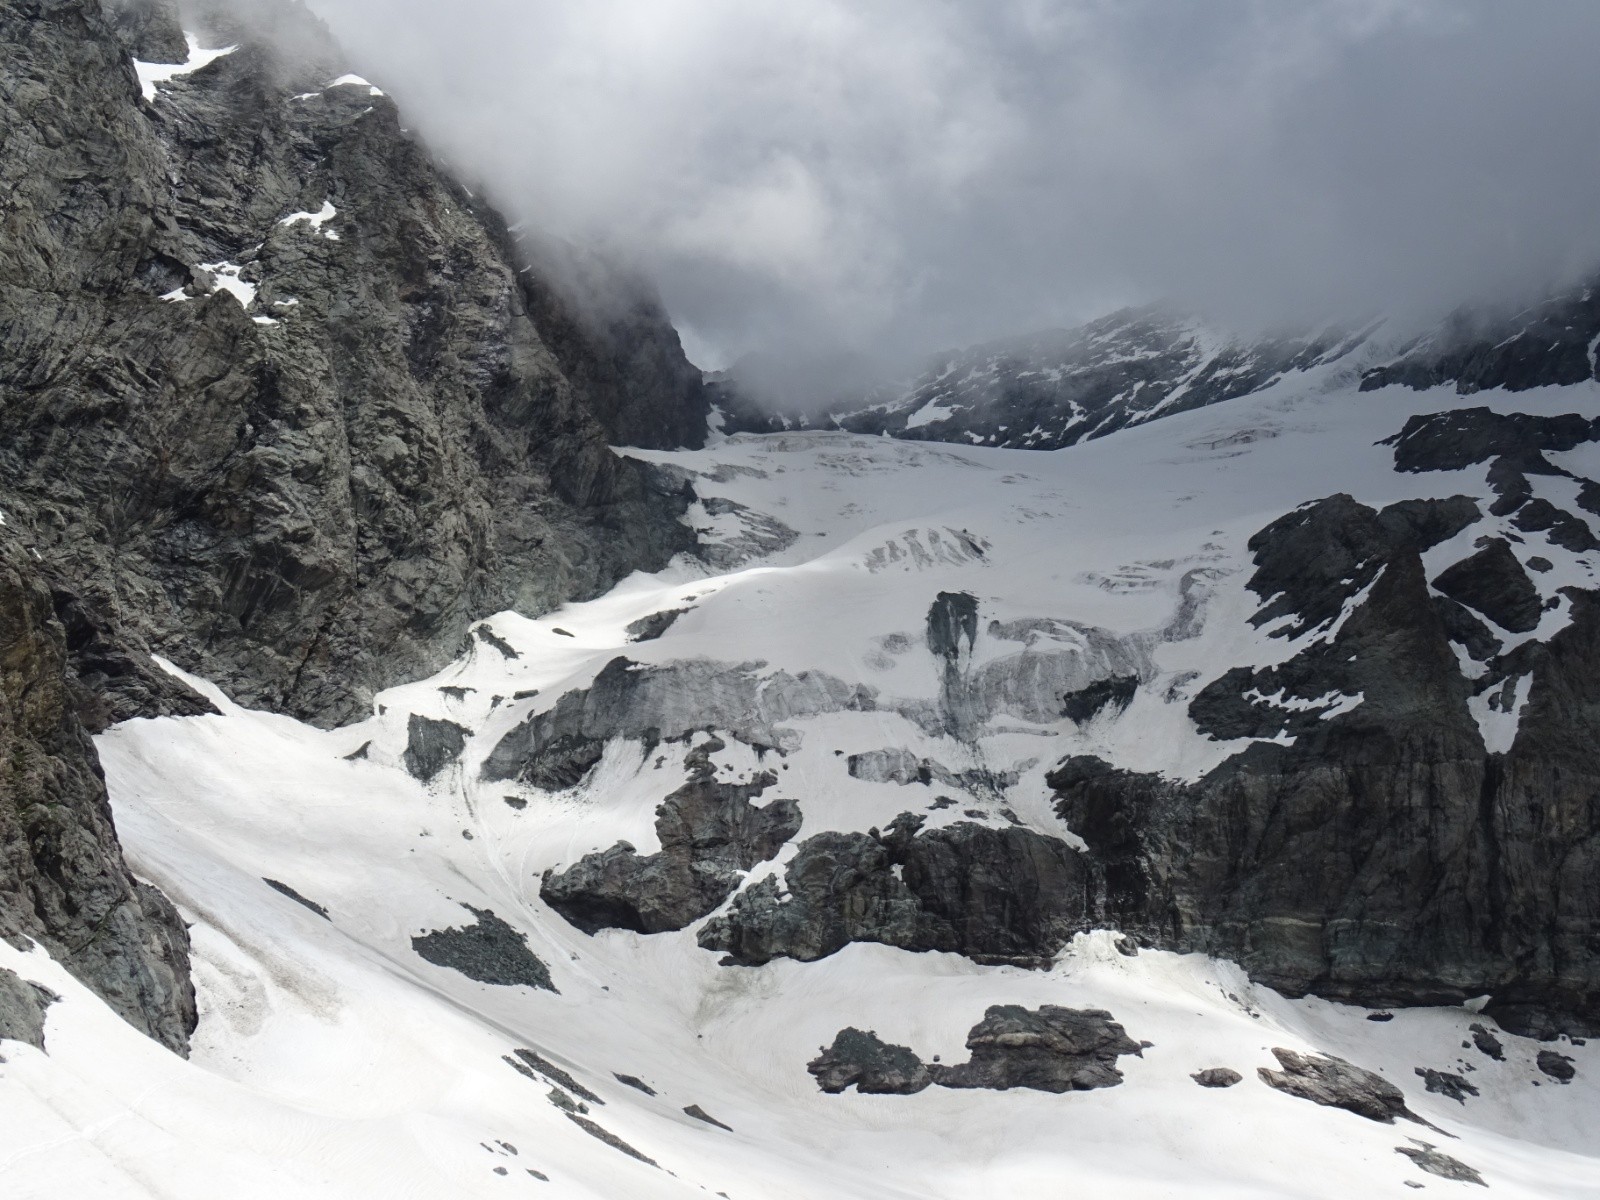 Vue d'ensemble du glacier du Geay, avec le final étroit